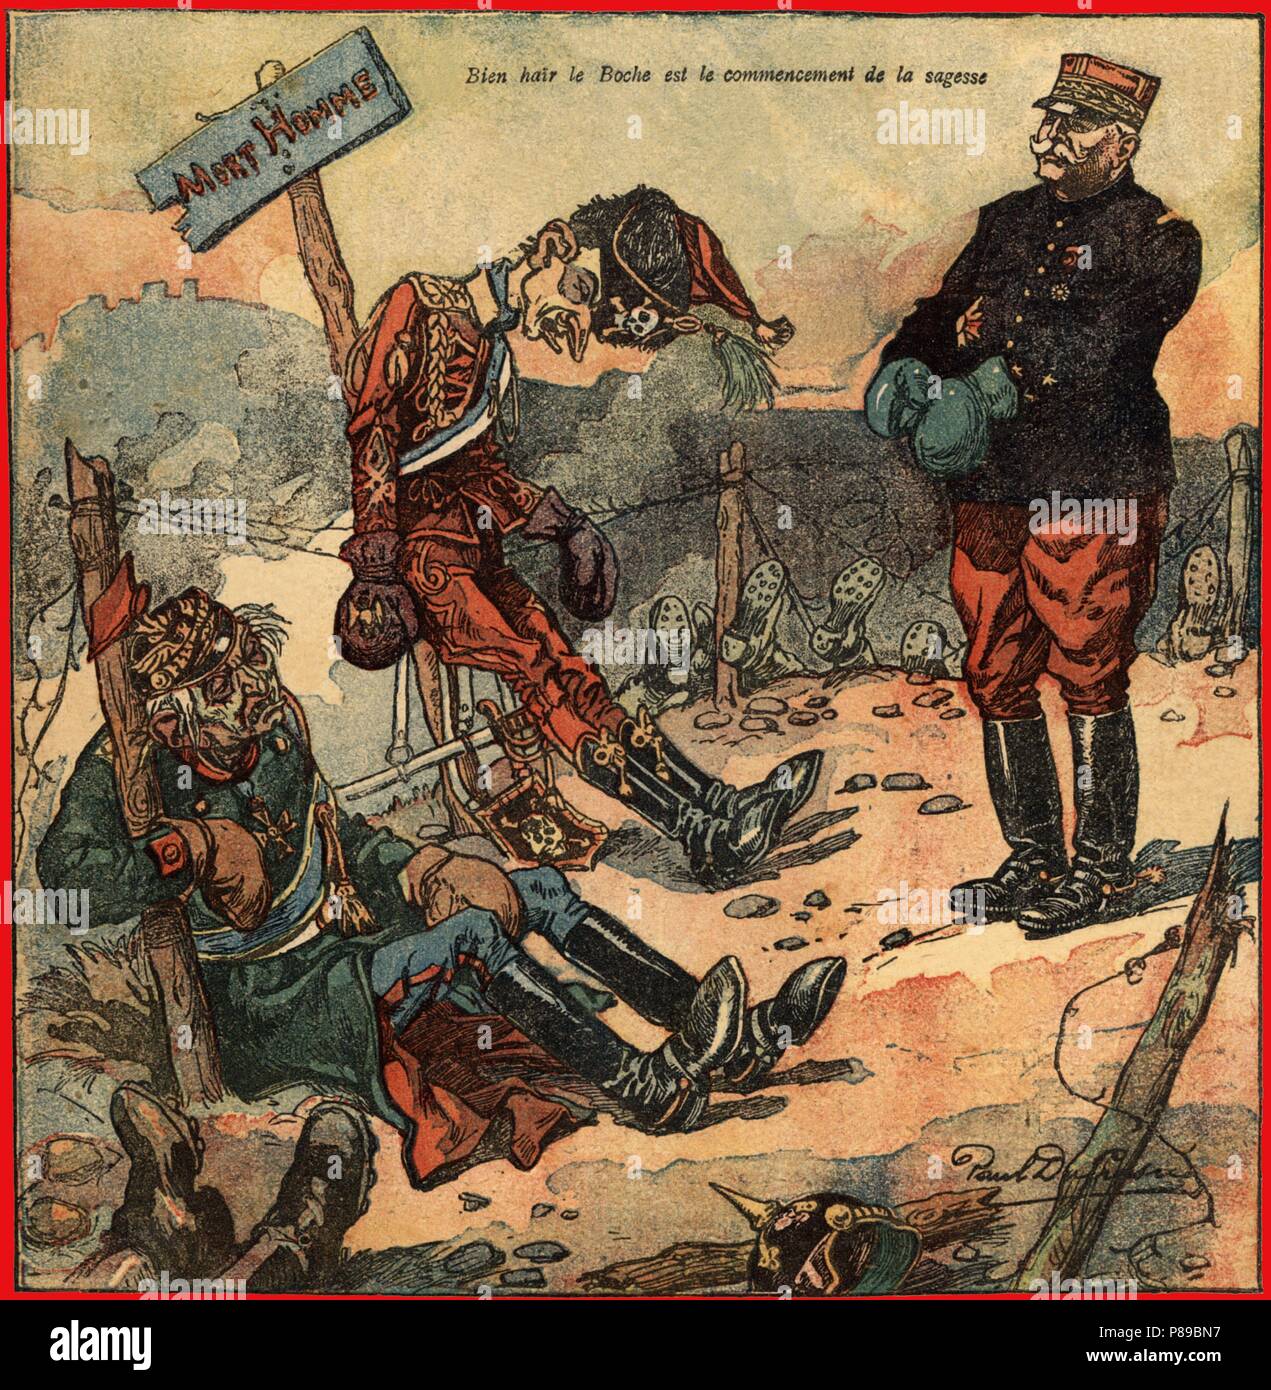 Primera guerra mundial (1914-1918). Batalla del Marne, Francia. El Mariscal Joseph Joffre (1852-1931) ante unos prisioneros alemanes. Caricatura. Año 1914. Stock Photo